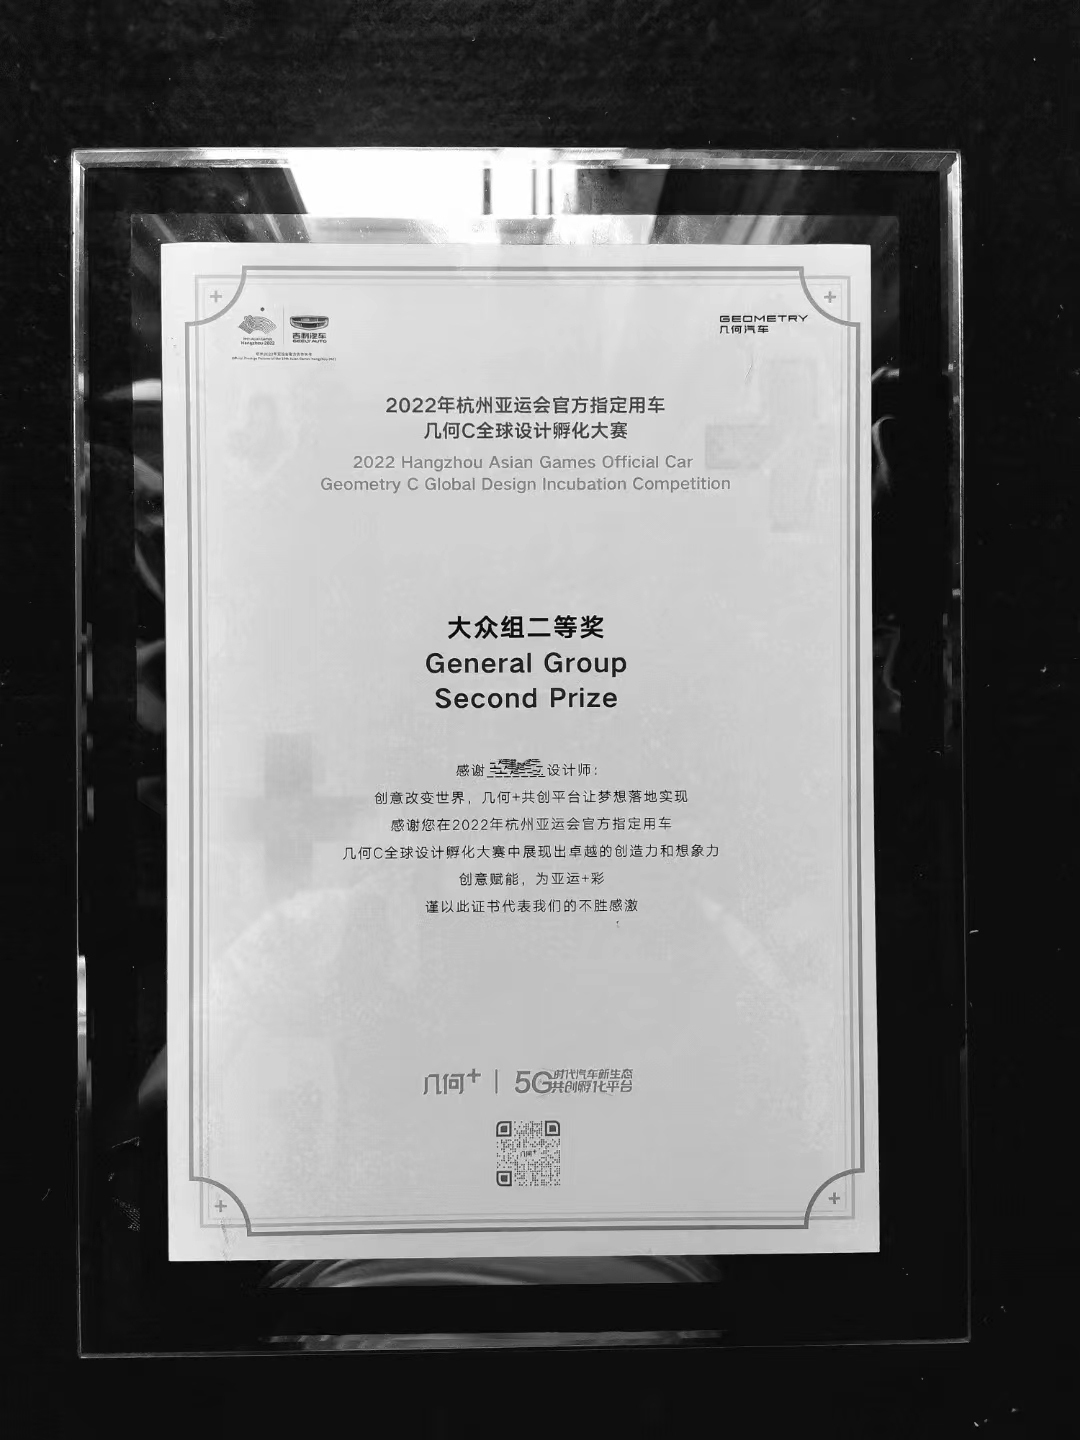 2022杭州亚运会官方用车几何c全球设计孵化大赛大众组二等奖图0